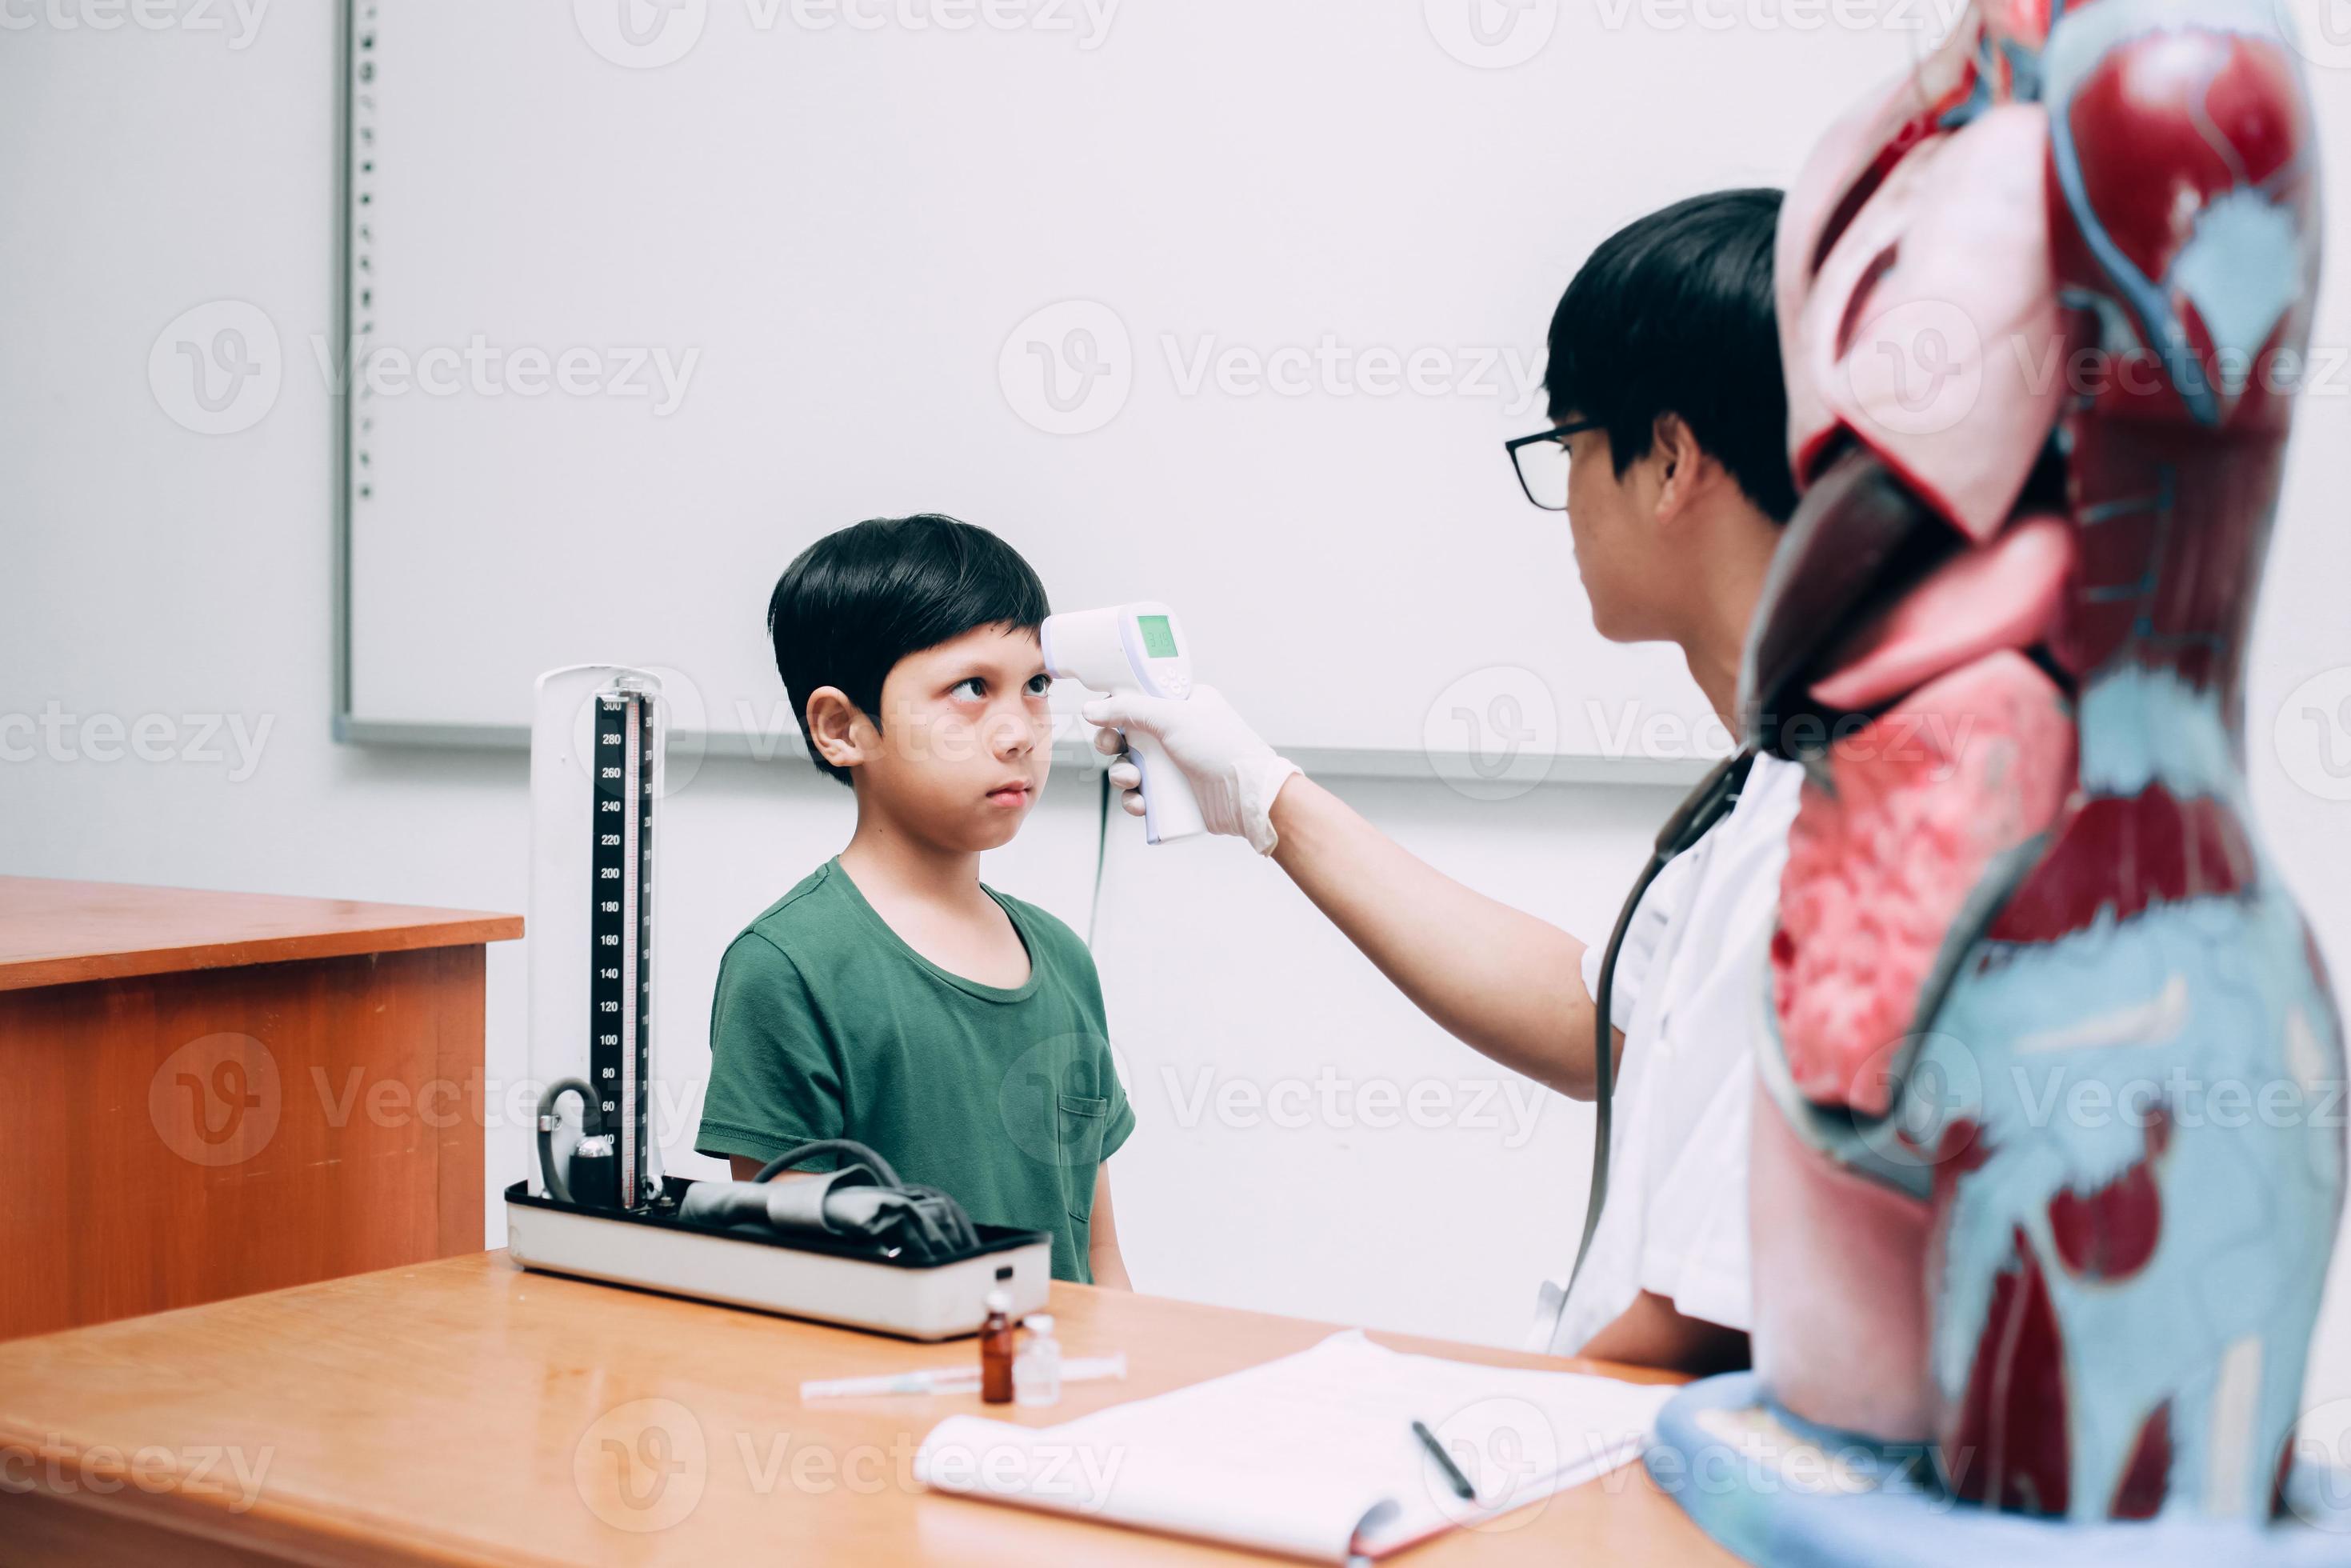 arzt überprüft die körpertemperatur des jungen patienten mit einer infrarot-stirnthermometerpistole foto